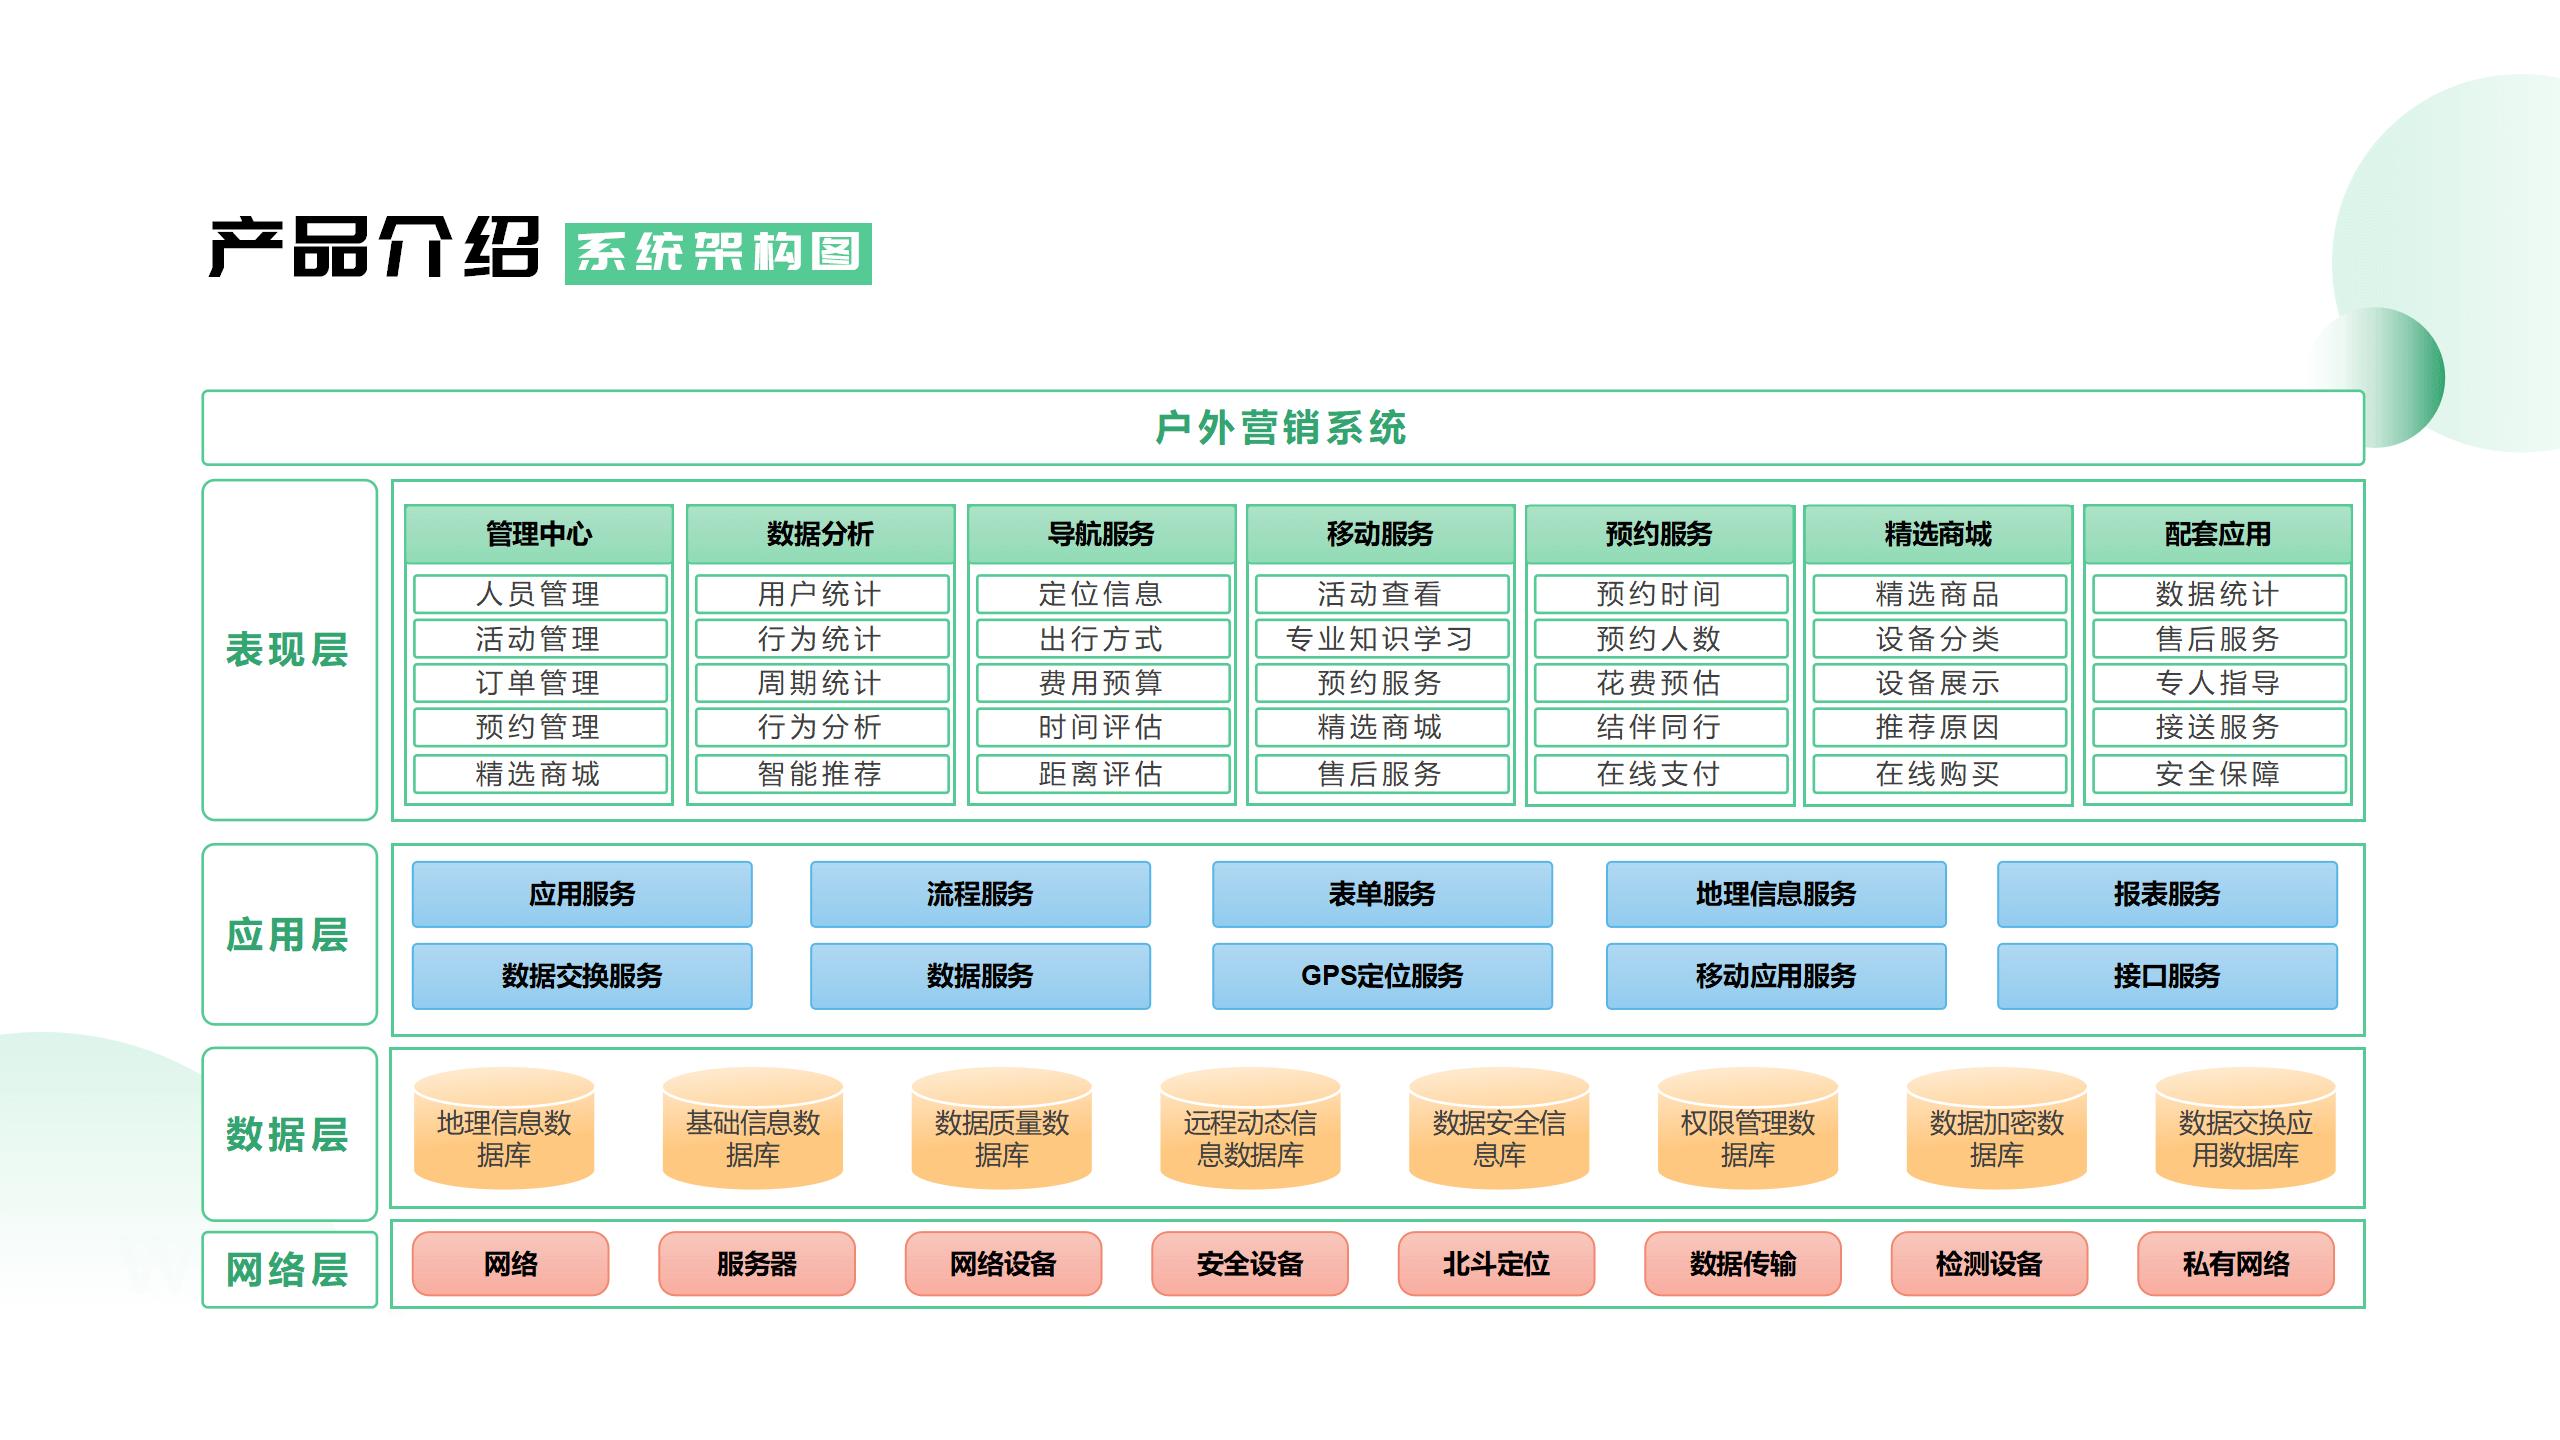 户外营销系统 黄伟 V2.0 -20230323_08